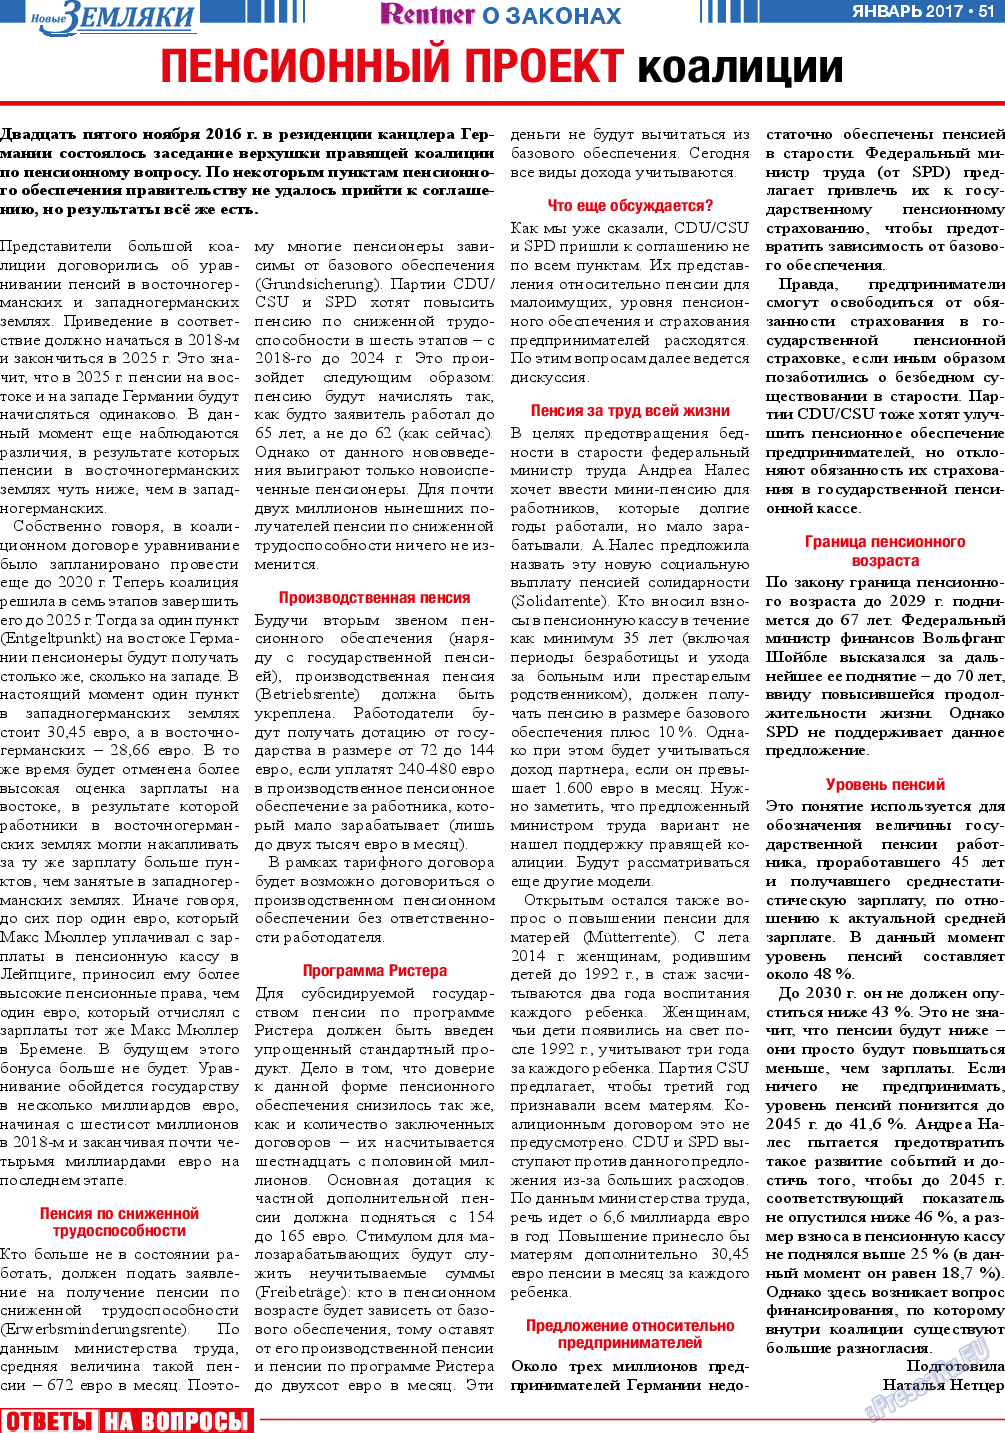 Новые Земляки (газета). 2017 год, номер 1, стр. 51